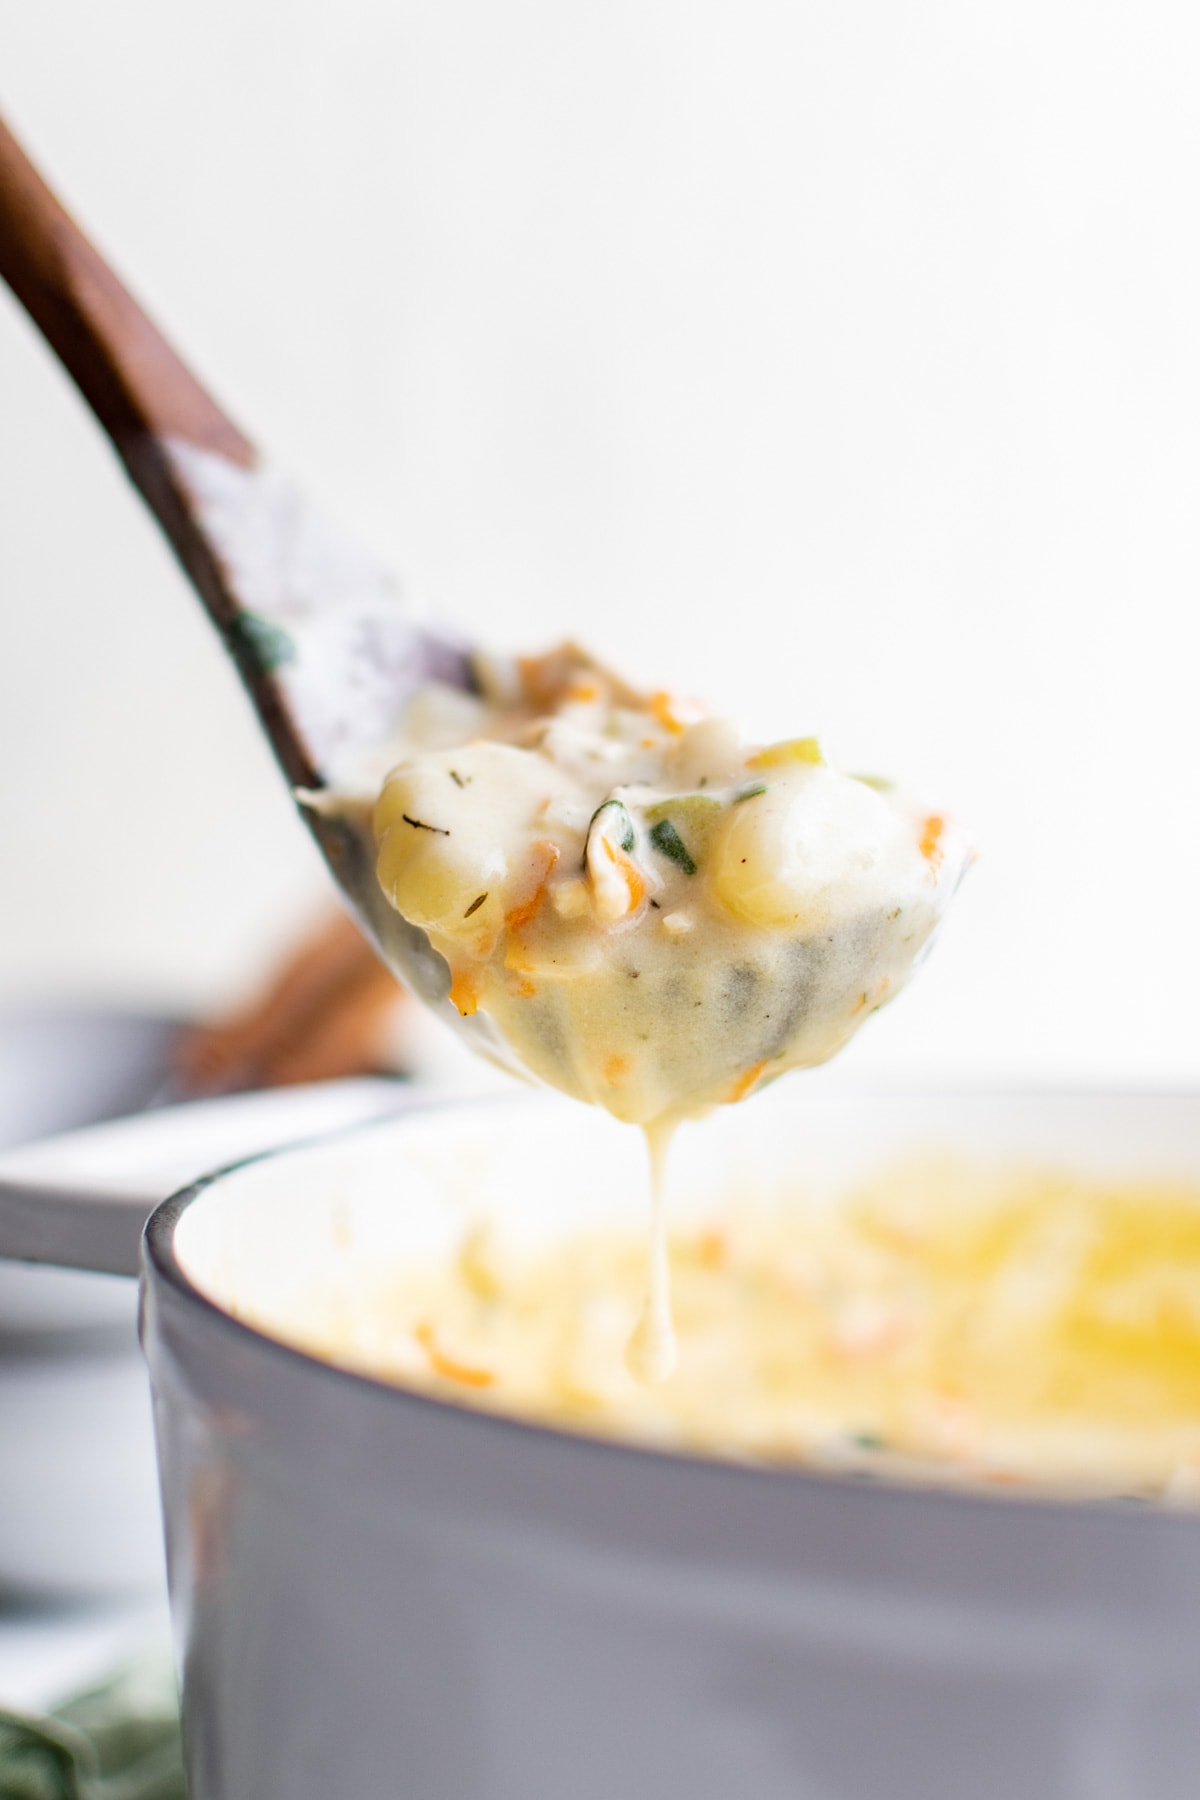 a ladle with some chicien gnocchi soup